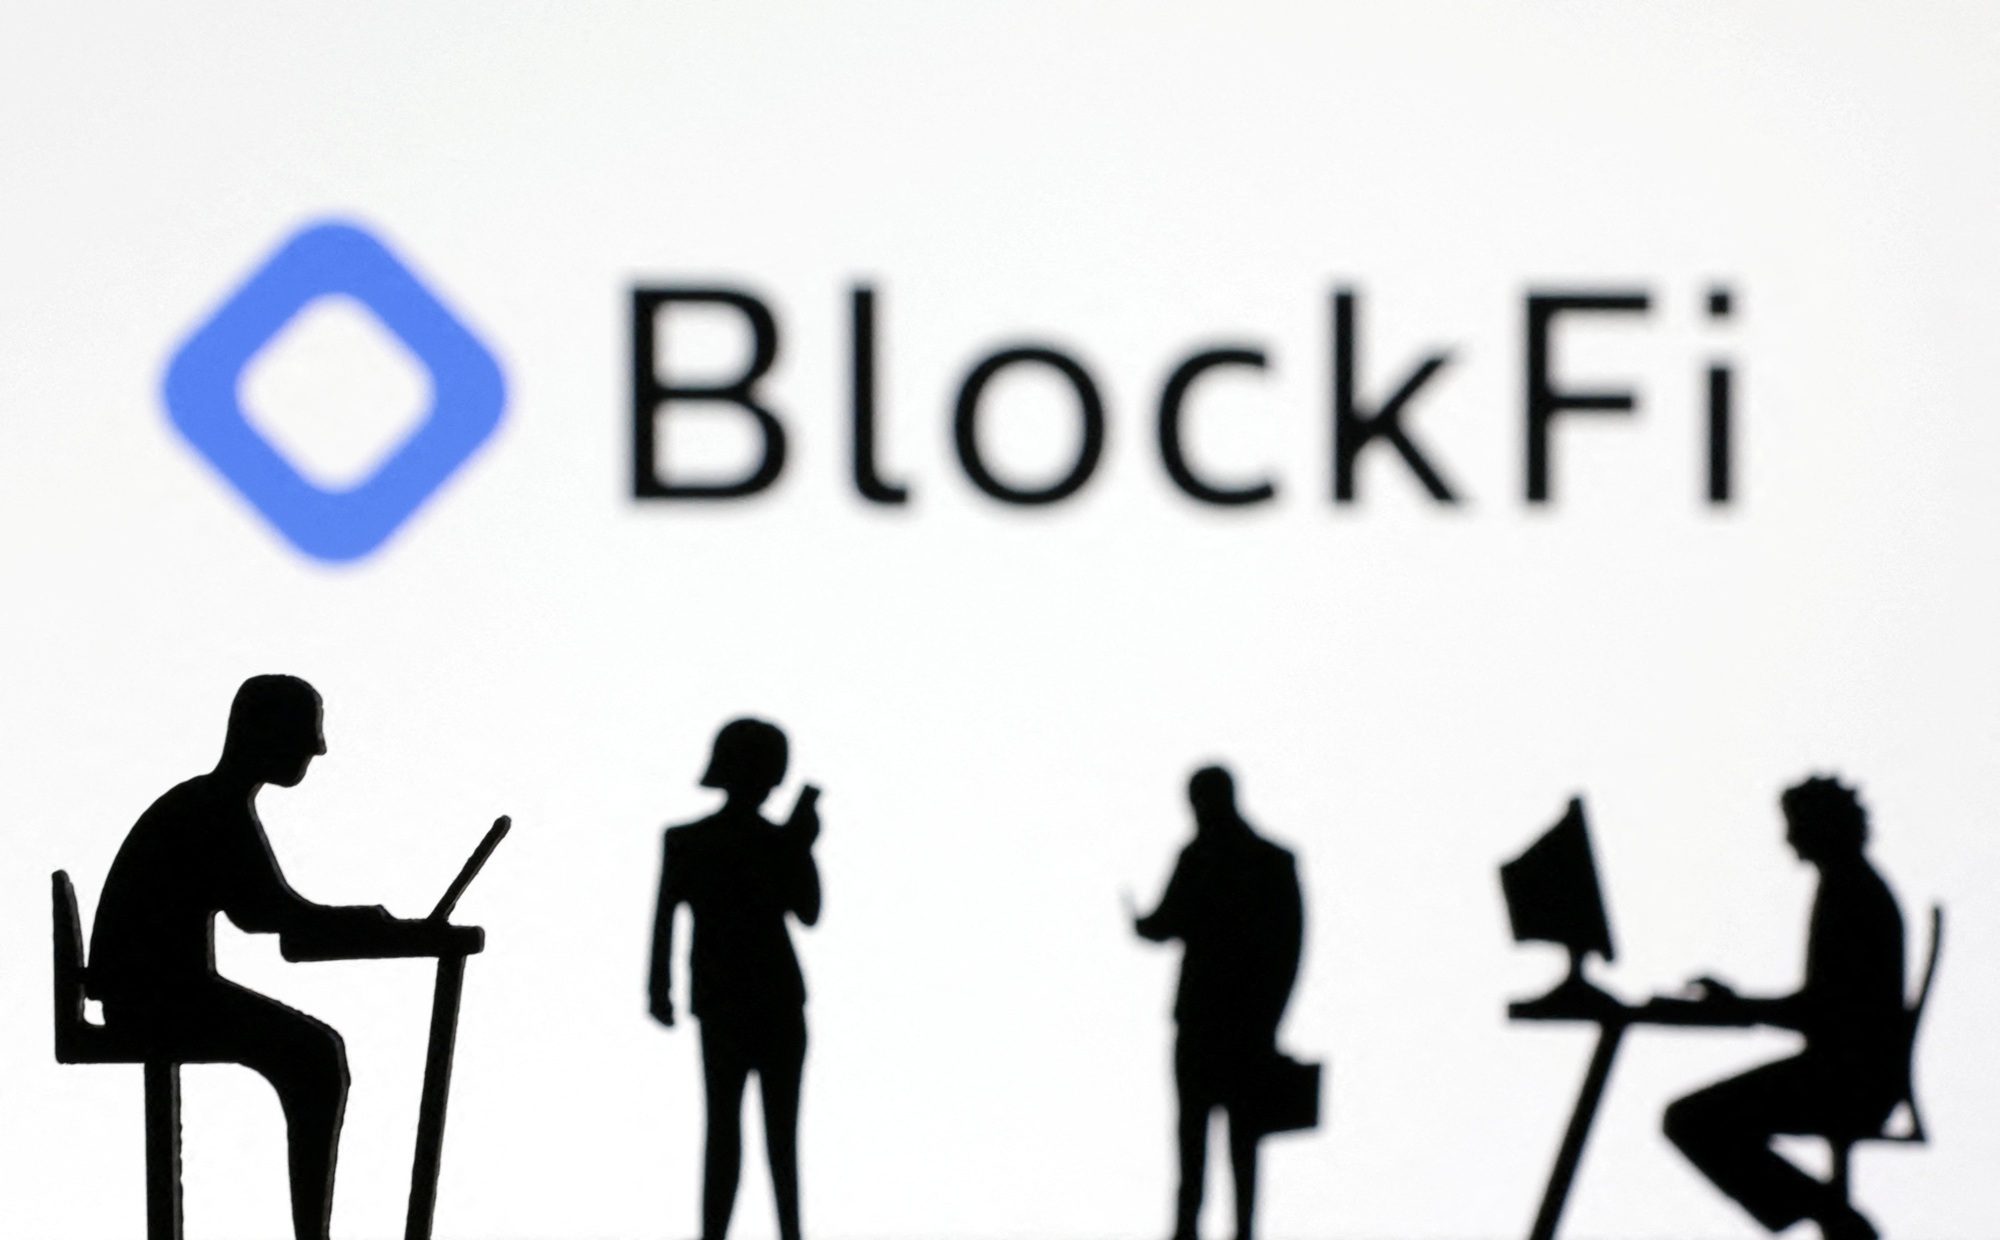 BlockFi có trụ sở tại New Jersey, được thành lập bởi Zac Prince, một doanh nhân điều hành fintech chuyển sang tiền điện tử, cho biết trong một hồ sơ xin bảo hộ phá sản rằng, việc tiếp xúc đáng kể với FTX đã tạo ra một cuộc khủng hoảng thanh khoản cho họ. Ảnh: @AFP.